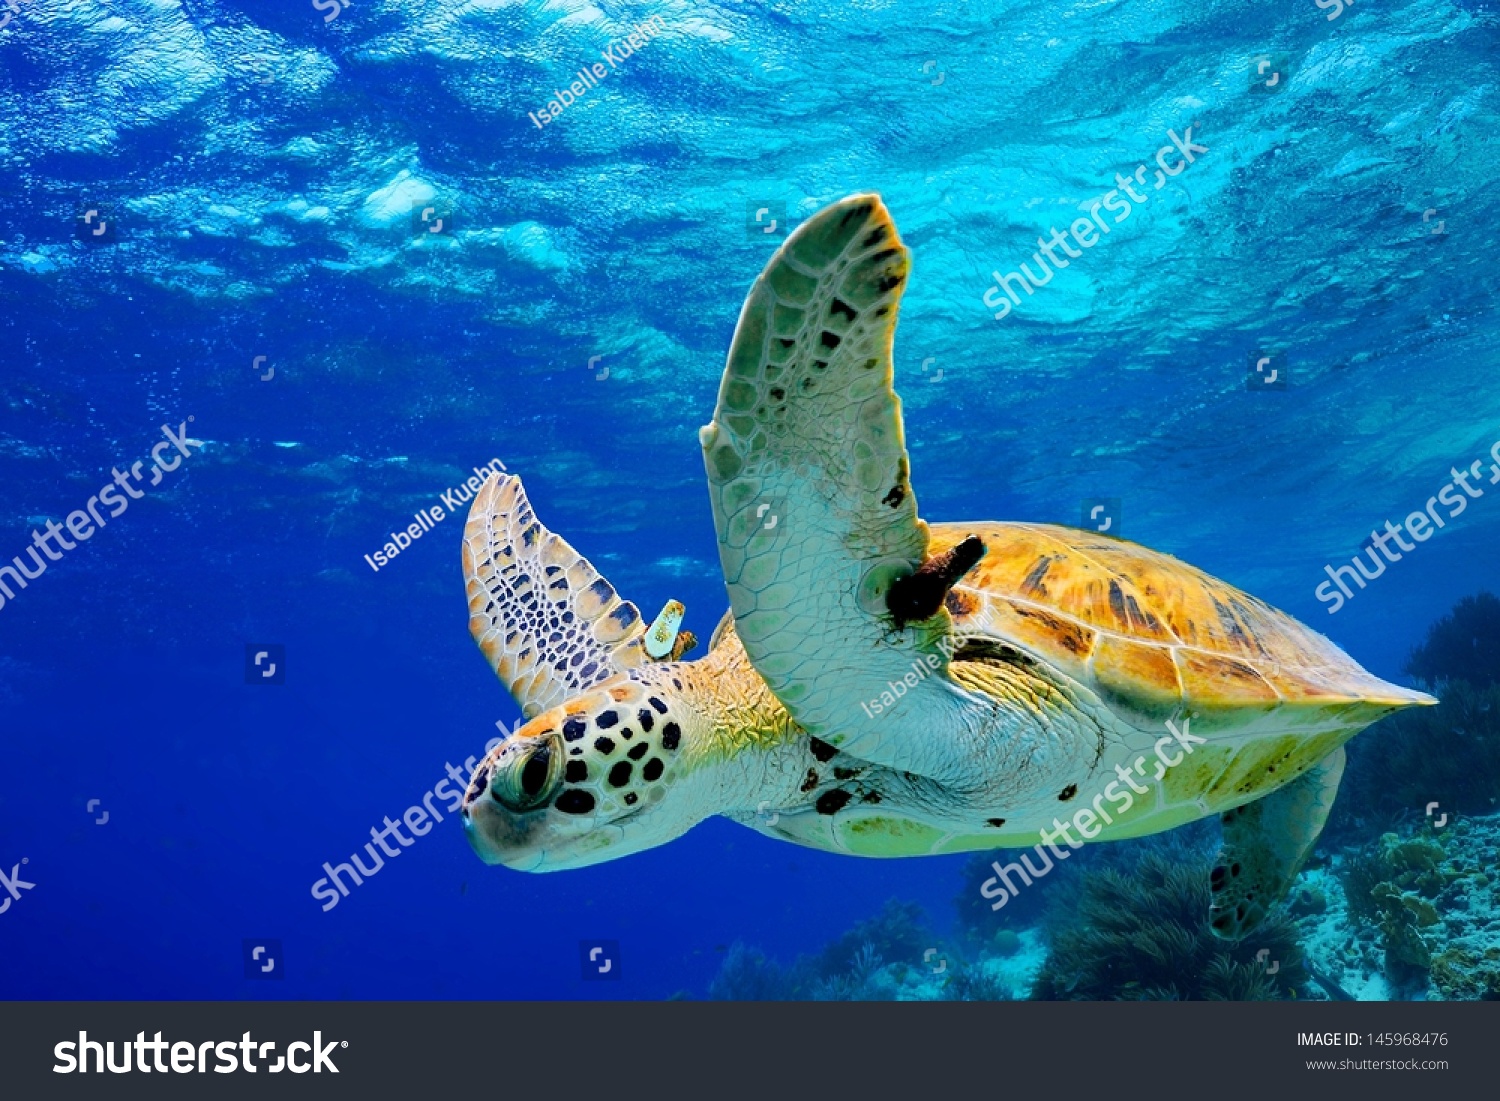 Green Sea Turtle swimming in Caribbean #145968476